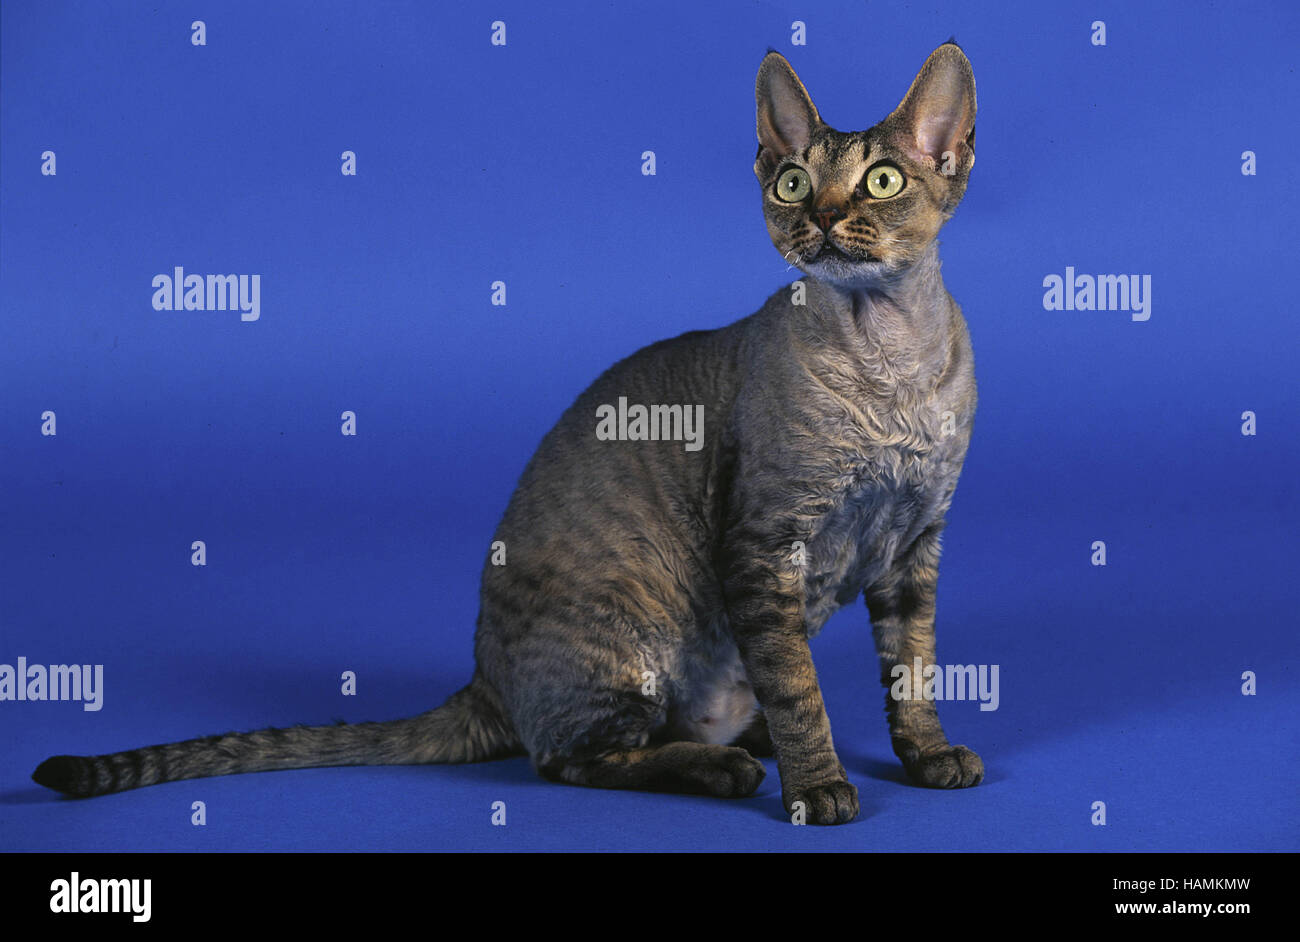 Devon-Rexkatze / Devon Rex Cat Stock Photo - Alamy